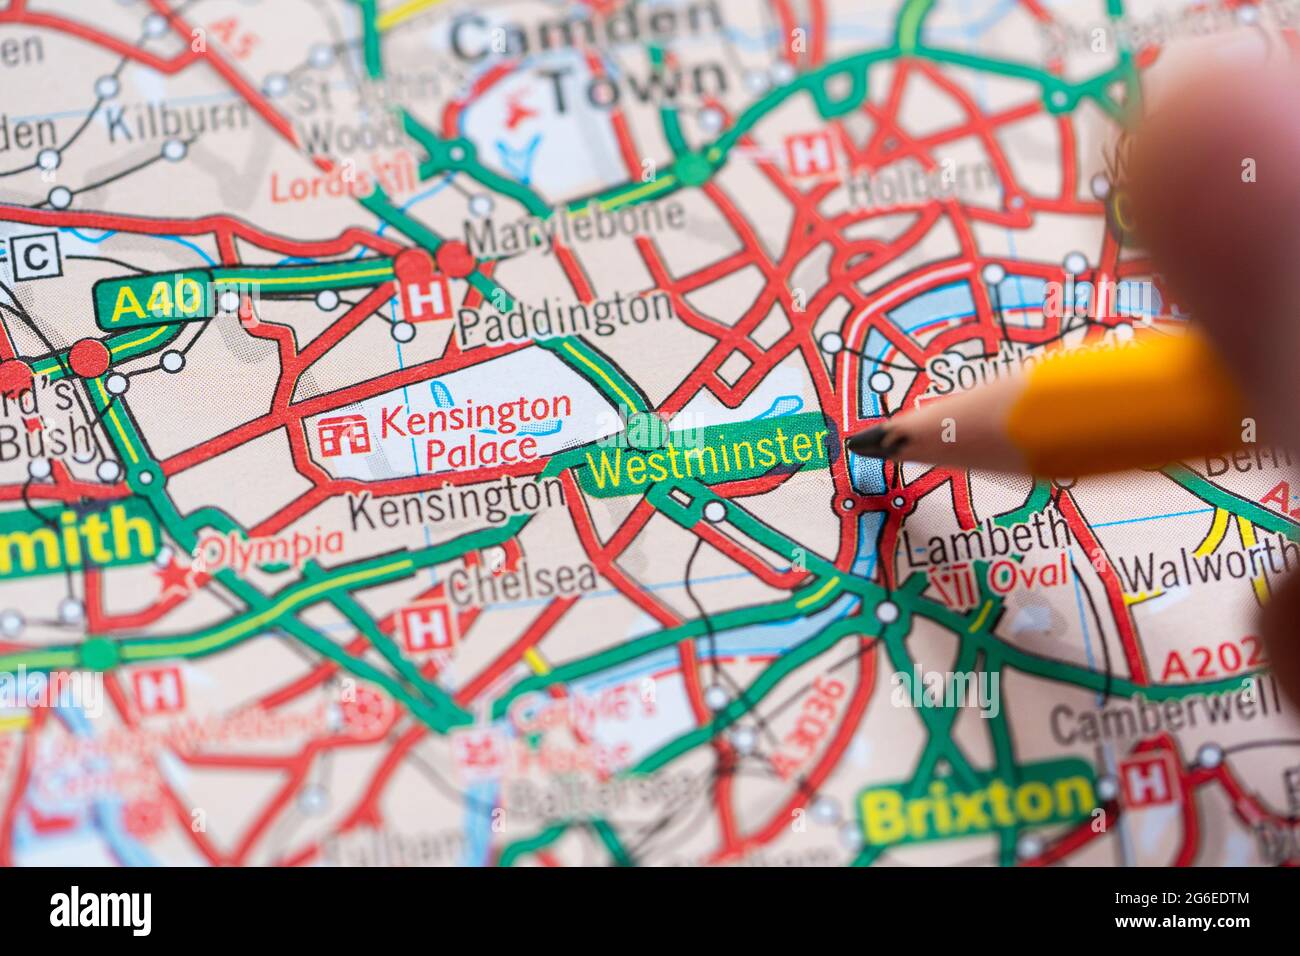 Nahaufnahme einer Seite in einem gedruckten Straßenkarte-Atlas mit einer Männerhand, die einen Bleistift hält, der auf den Stadtteil Westminster im Zentrum von London, England, zeigt Stockfoto